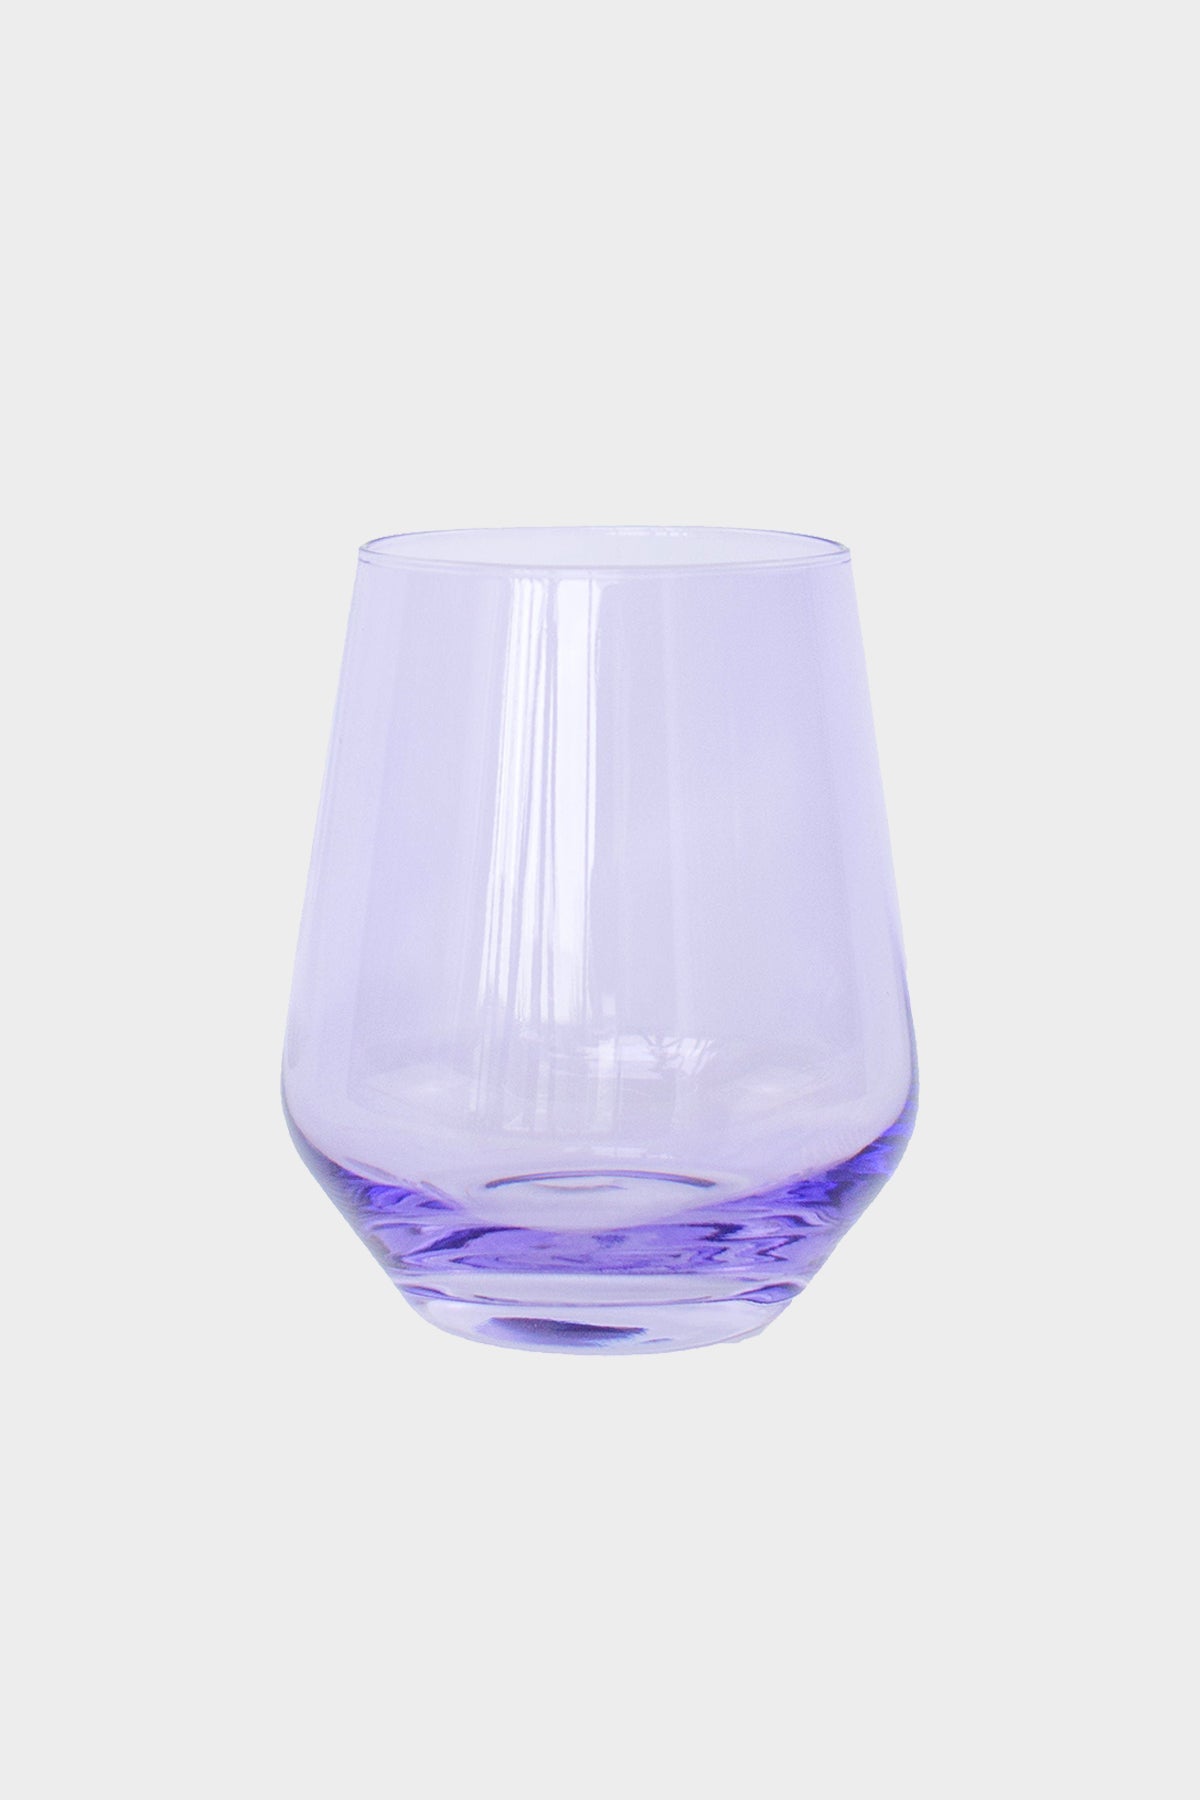 Wine Stemless Glass in Lavender - Set of 6 - shop-olivia.com